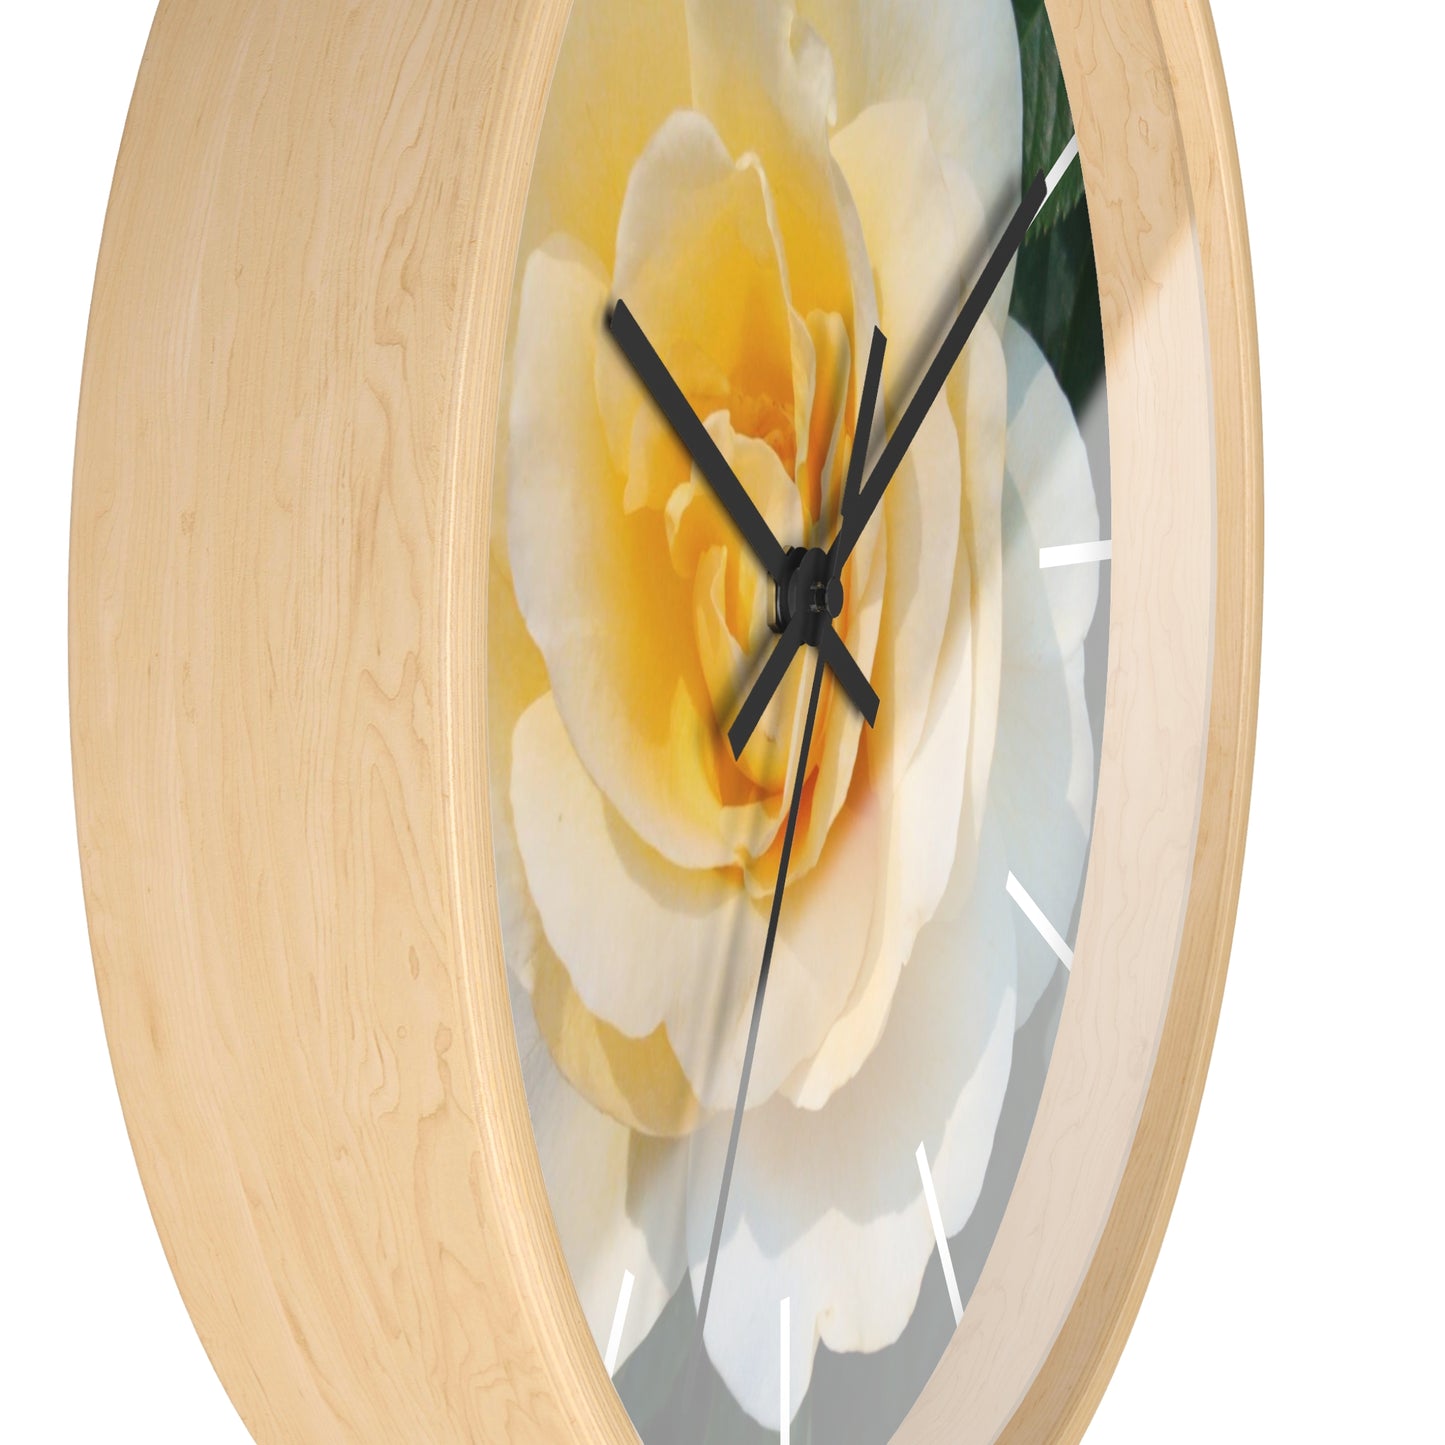 Cream Rose Wall Clock